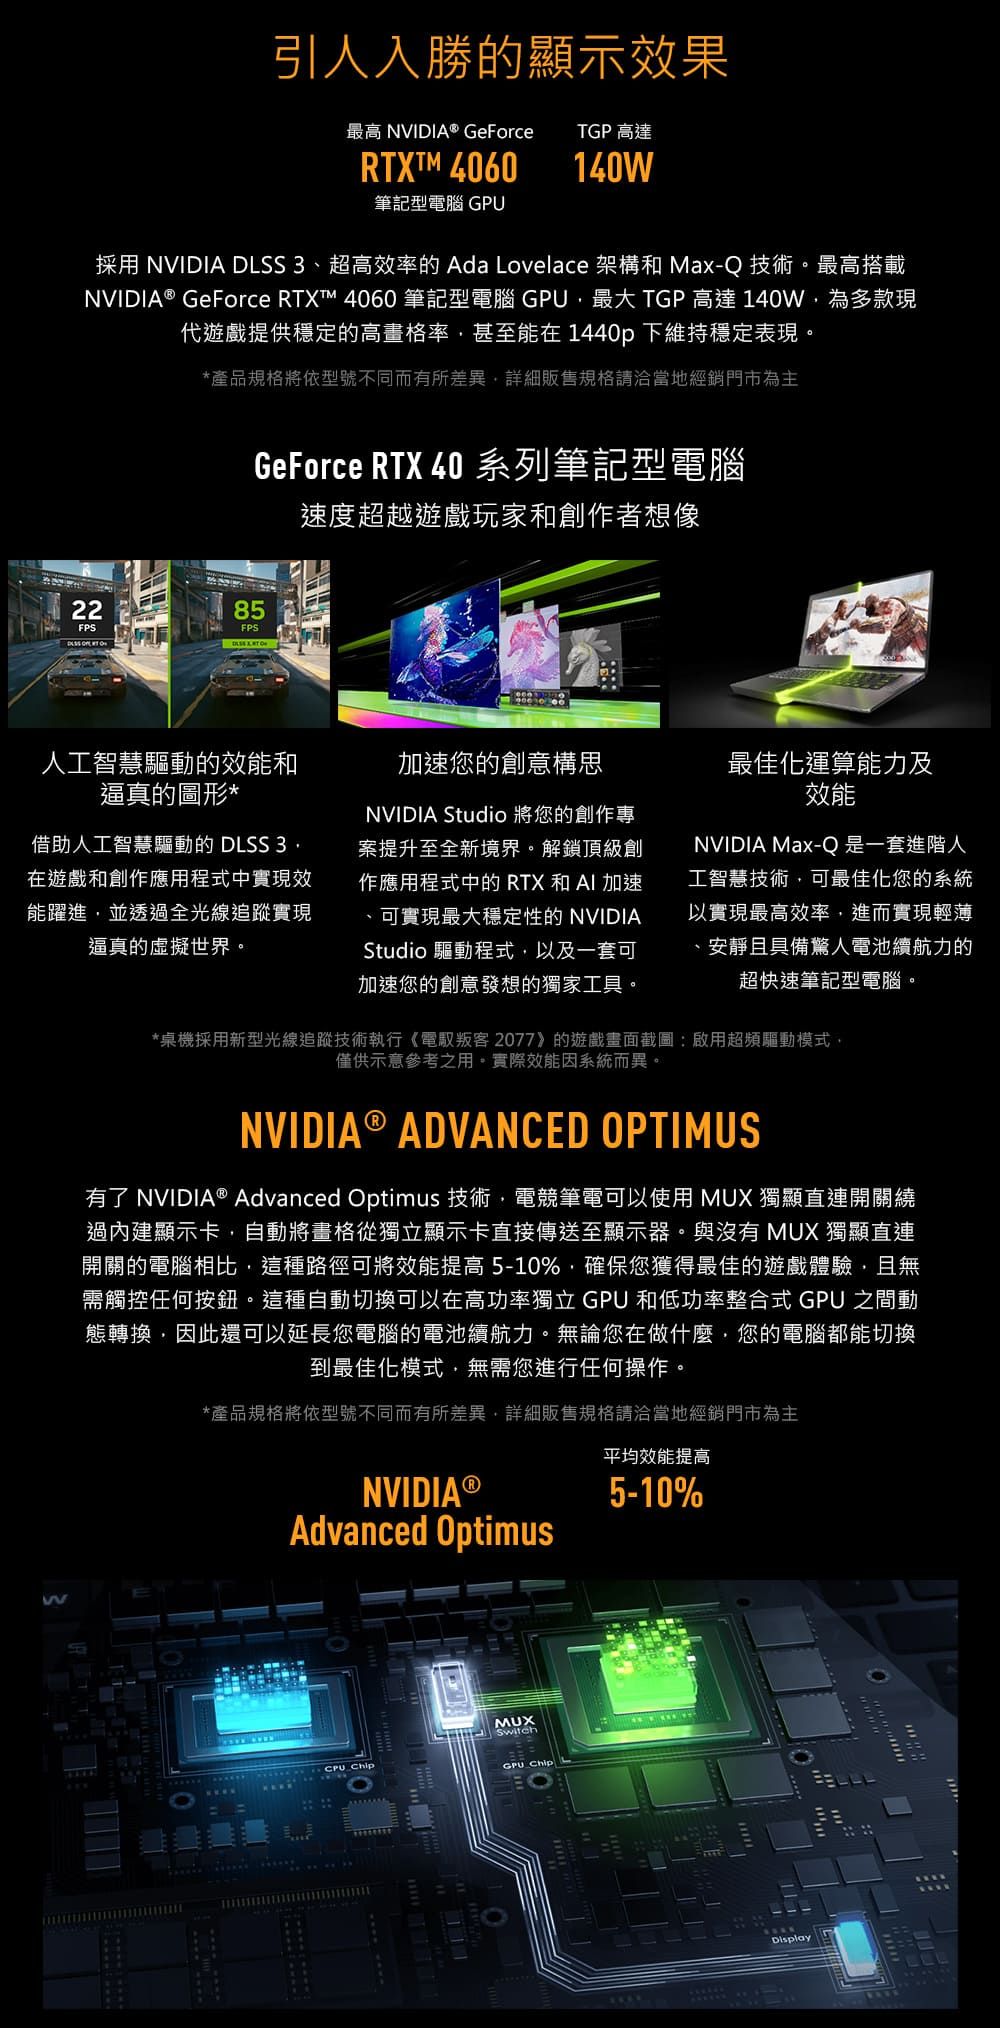 引人入勝的顯示效果最高 NVIDIA® GeForce TGP 高達RTXTM 4060140筆記型電腦 採用 NVIDIA DLSS 3超高效率的 Ada Lovelace 架構和 Max-Q 技術。最高搭載NVIDIA® GeForce RTXT™ 4060 筆記型電腦 GPU最大 TGP高達140W為多款現代遊戲提供穩定的高畫格率甚至能在 1440p 下維持穩定表現。*產品規格將依型號不同而有所差異詳細販售規格請洽當地經銷門市為主GeForce RTX 40 系列筆記型電腦速度超越遊戲玩家和創作者想像2285FPS  人工智慧驅動的效能和逼真的圖形*借助人工智慧驅動的 DLSS 3在遊戲和創作應用程式中實現能躍進並透過全光線追蹤實現逼真的虛擬世界。加速您的創意構思NVIDIA Studio 將您的創作專案提升至全新境界。解鎖頂級創作應用程式中的RTX和AI加速、可實現最大穩定性的 NVIDIAStudio 驅動程式以及一套可加速您的創意發想的獨家工具。最佳化運算能力及效能NVIDIA Max-Q是一套進階人工智慧技術可最佳化您的系統以實現最高效率,進而實現輕薄、安靜且具備驚人電池續航力的超快速筆記型電腦。*桌機採用新型光線追蹤技術執行《電馭叛客2077》的遊戲畫面截圖:啟用超頻驅動模式,僅供示意參考之用。實際效能因系統而異。NVIDIA® ADVANCED OPTIMUS有了 NVIDIA® Advanced Optimus 技術,電競筆電可以使用 MUX 獨顯直連開關繞過內建顯示卡,自動將畫格從獨立顯示卡直接傳送至顯示器。與沒有 MUX 獨顯直連開關的電腦相比,這種路徑可將效能提高5-10%,確保您獲得最佳的遊戲體驗,且無需觸控任何按鈕。這種自動切換可以在高功率獨立 GPU 和低功率整合式 GPU 之間動態轉換,因此還可以延長您電腦的電池續航力。無論您在做什麼,您的電腦都能切換到最佳化模式,無需您進行任何操作。*產品規格將依型號不同而有所差異,詳細販售規格請洽當地經銷門市為主NVIDIA ®Advanced Optimus平均效能提高5-10%W ChipMUXSwitchGPU ChipDisplay